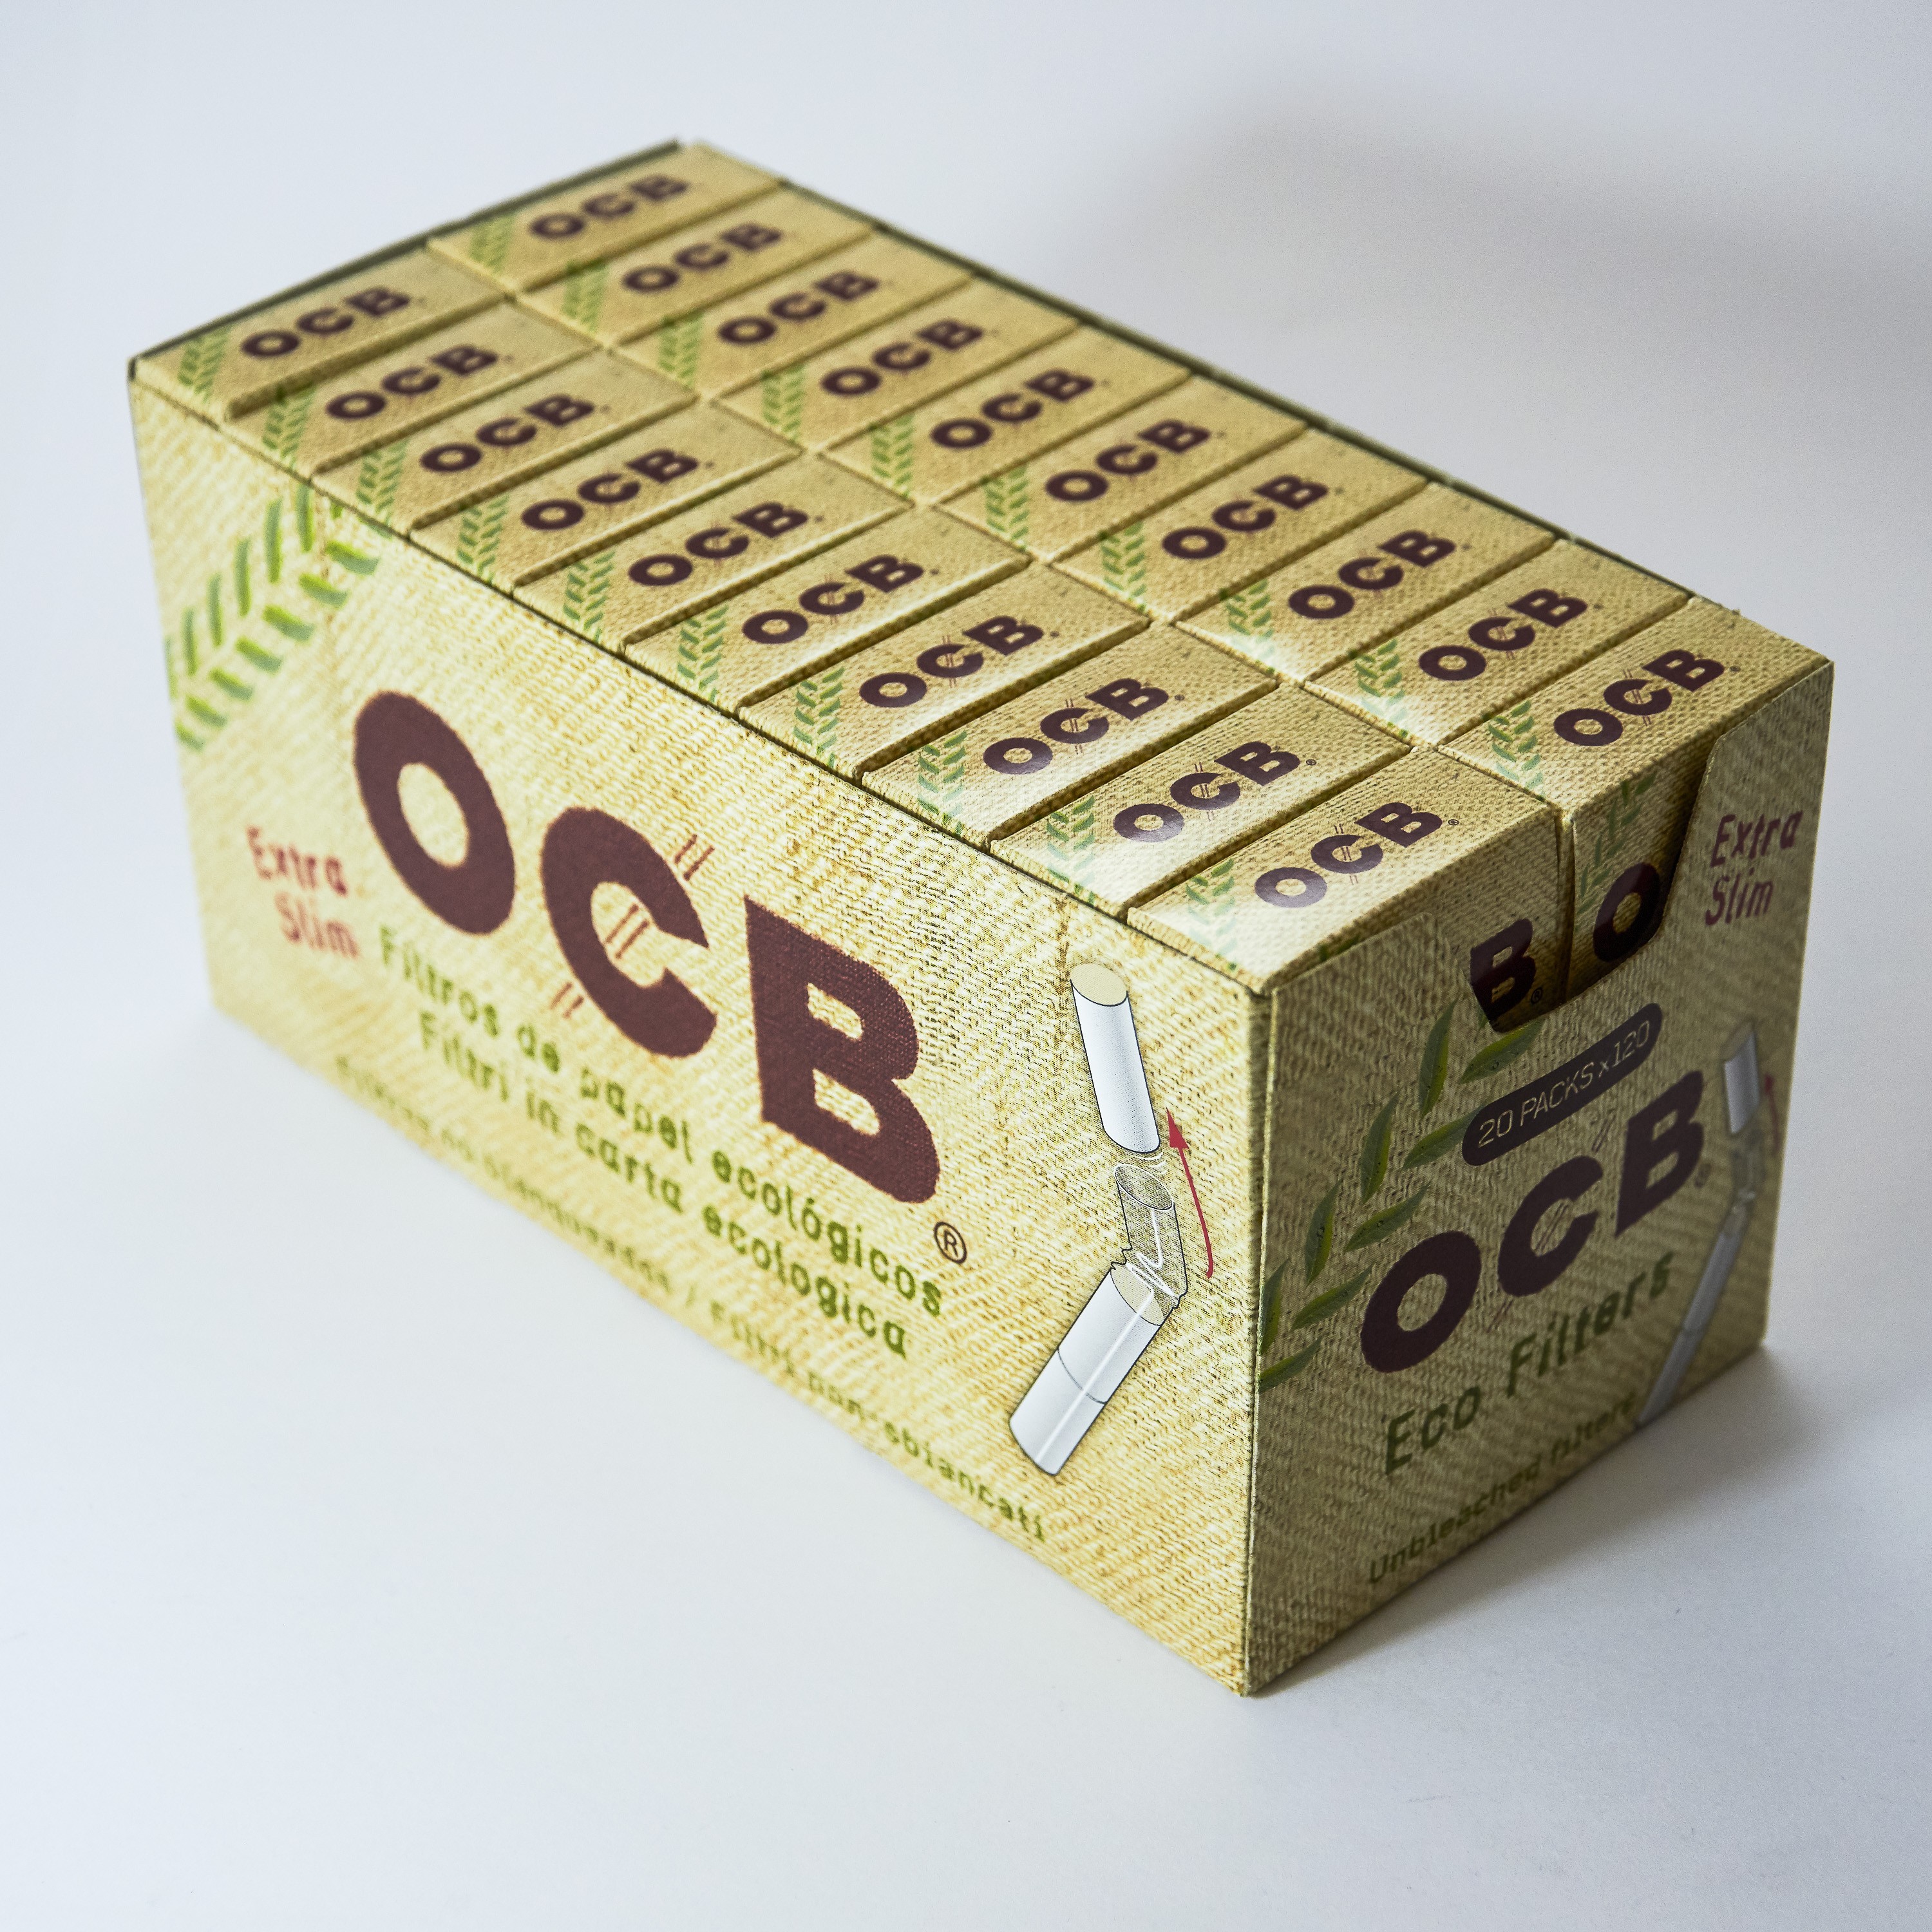 Boite de 120 filtres OCB stick premium – La Havane Nîmes